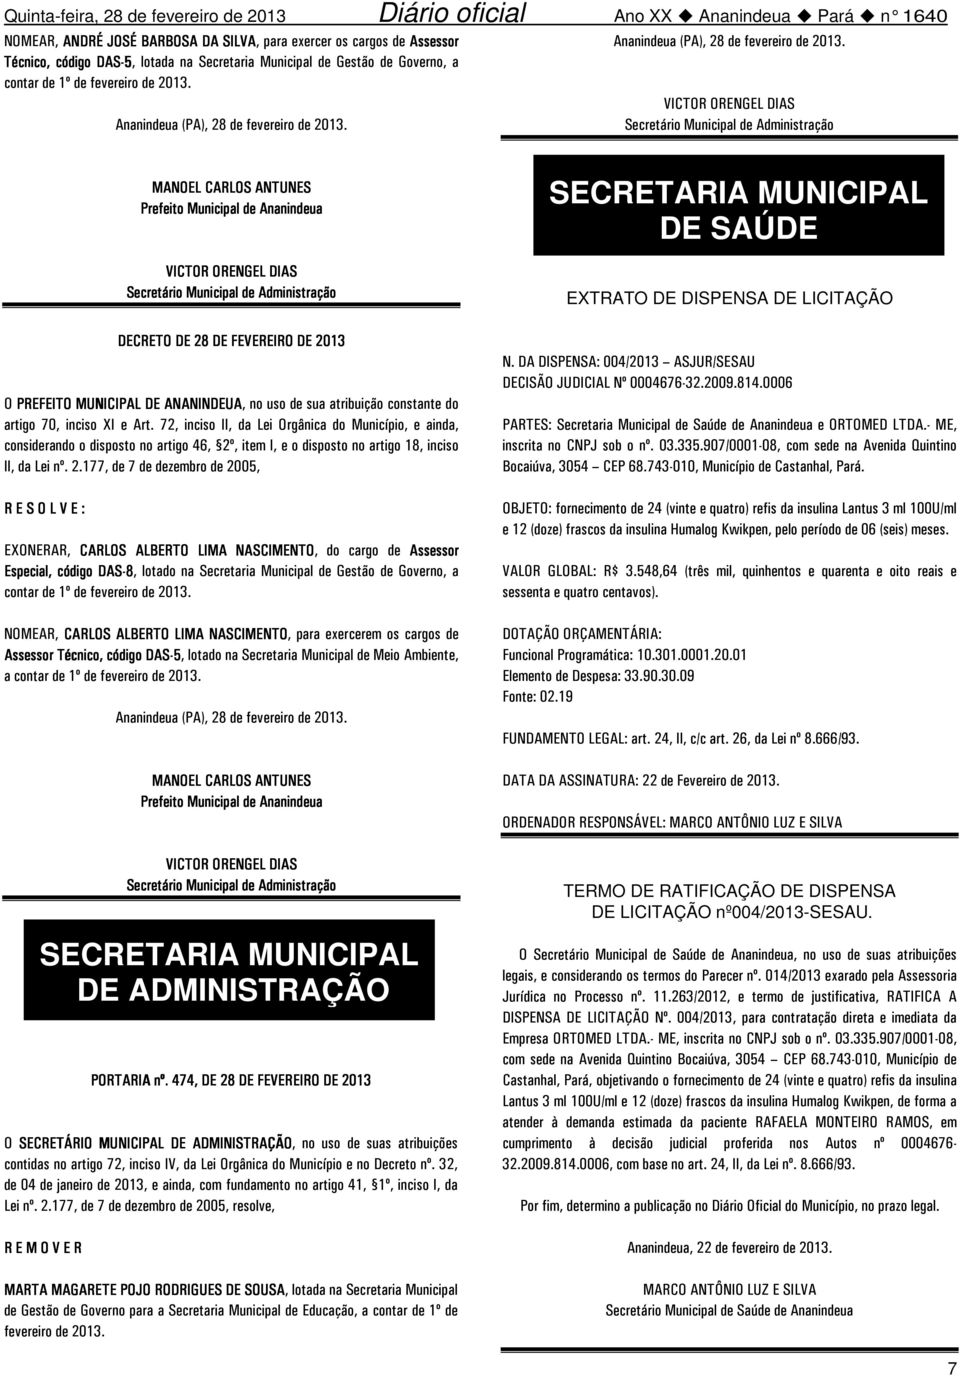 NOMEAR, CARLOS ALBERTO LIMA NASCIMENTO, para exercerem os cargos de Assessor Técnico,, código, lotado na Secretaria Municipal de Meio Ambiente, a contar de 1º de fevereiro de 2013.